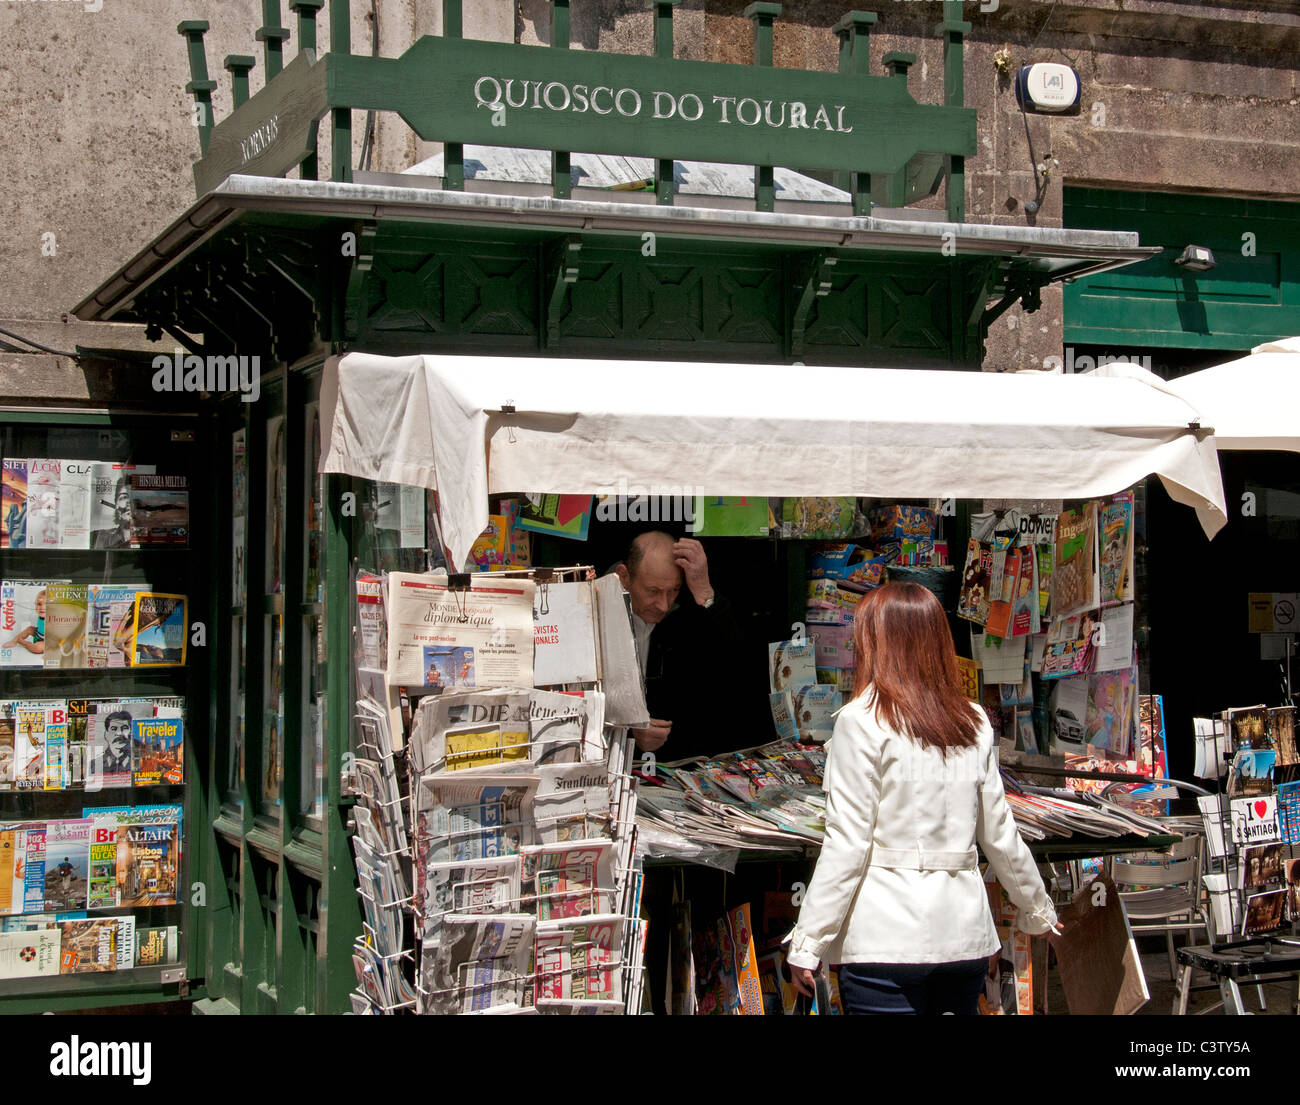 N'Quisosco Journal Santiago de Compostela old town city Espagne kiosque infos livre Banque D'Images